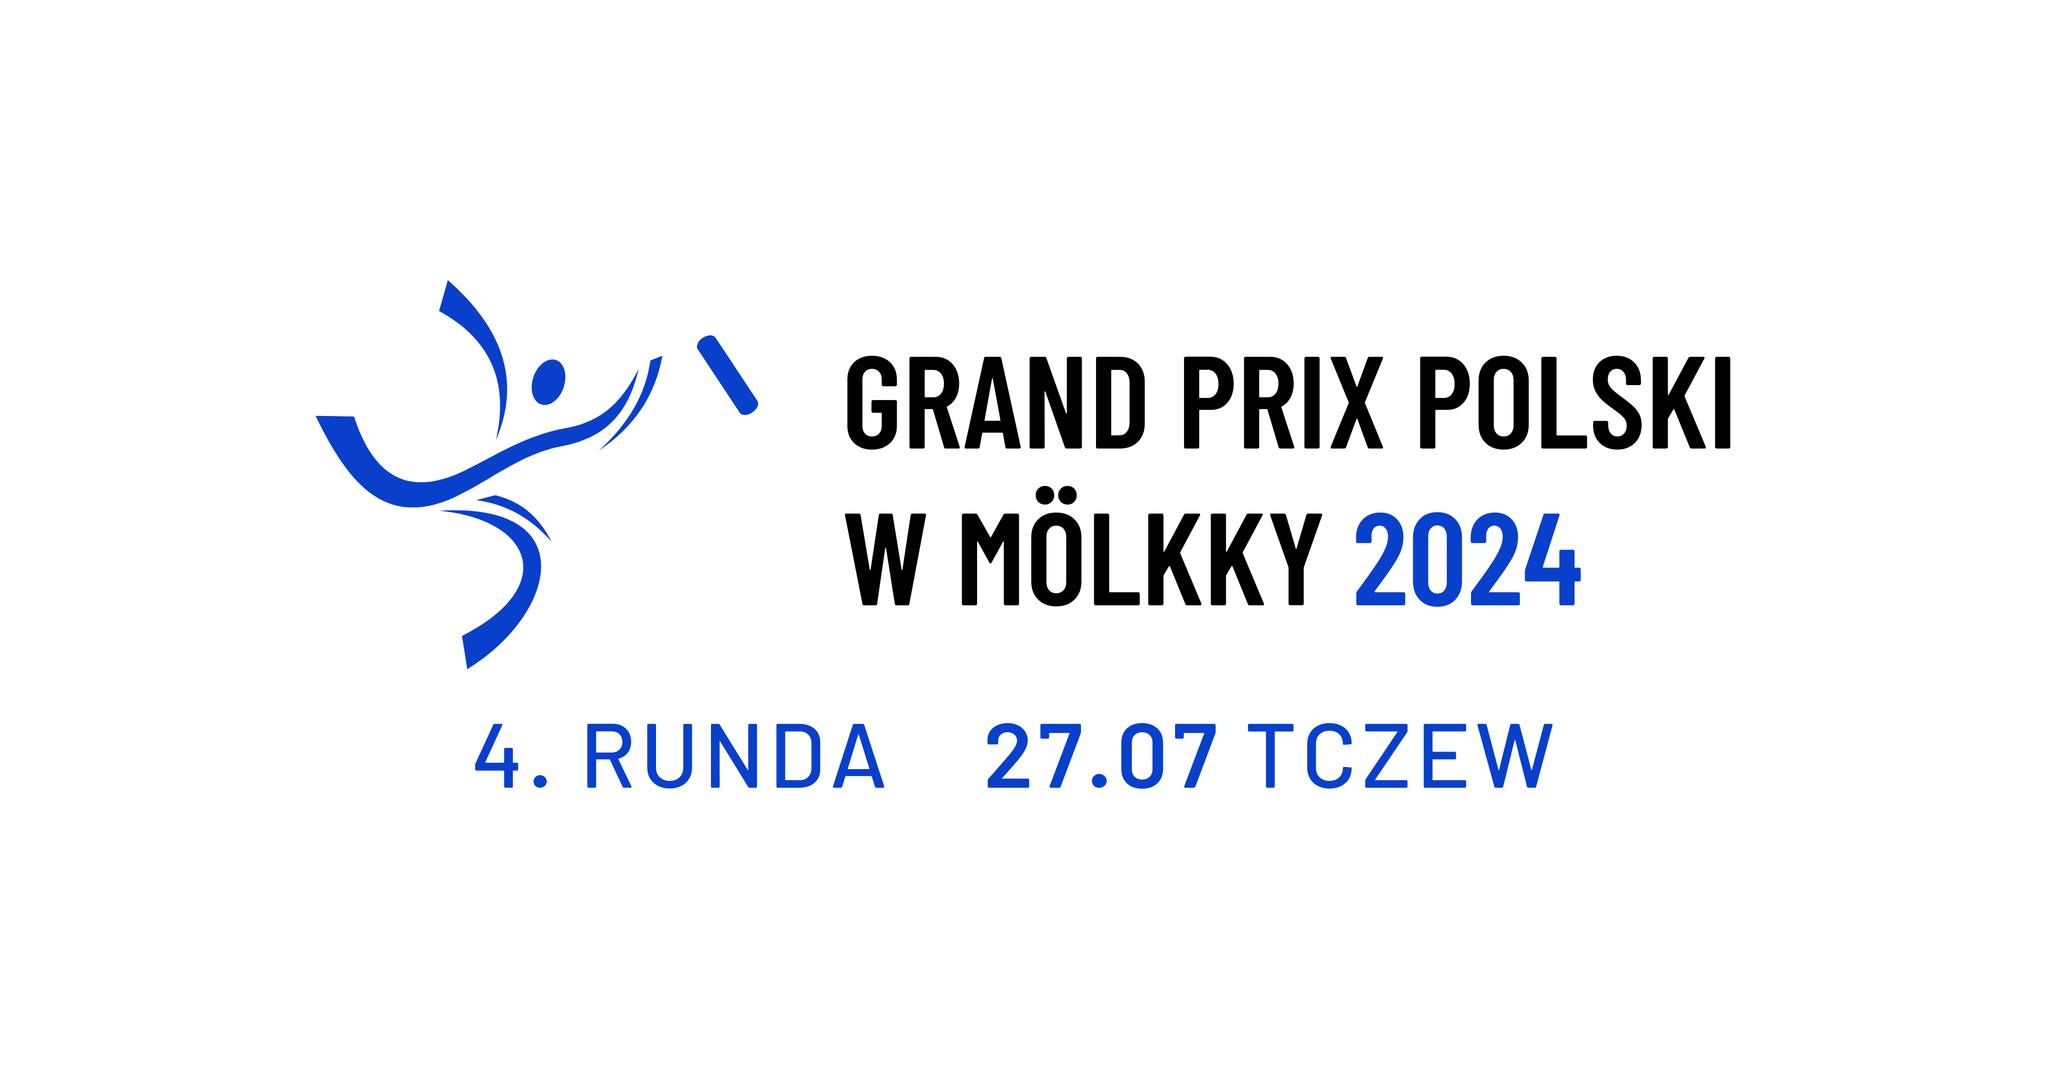 Grand Prix of Poland - event 4/5